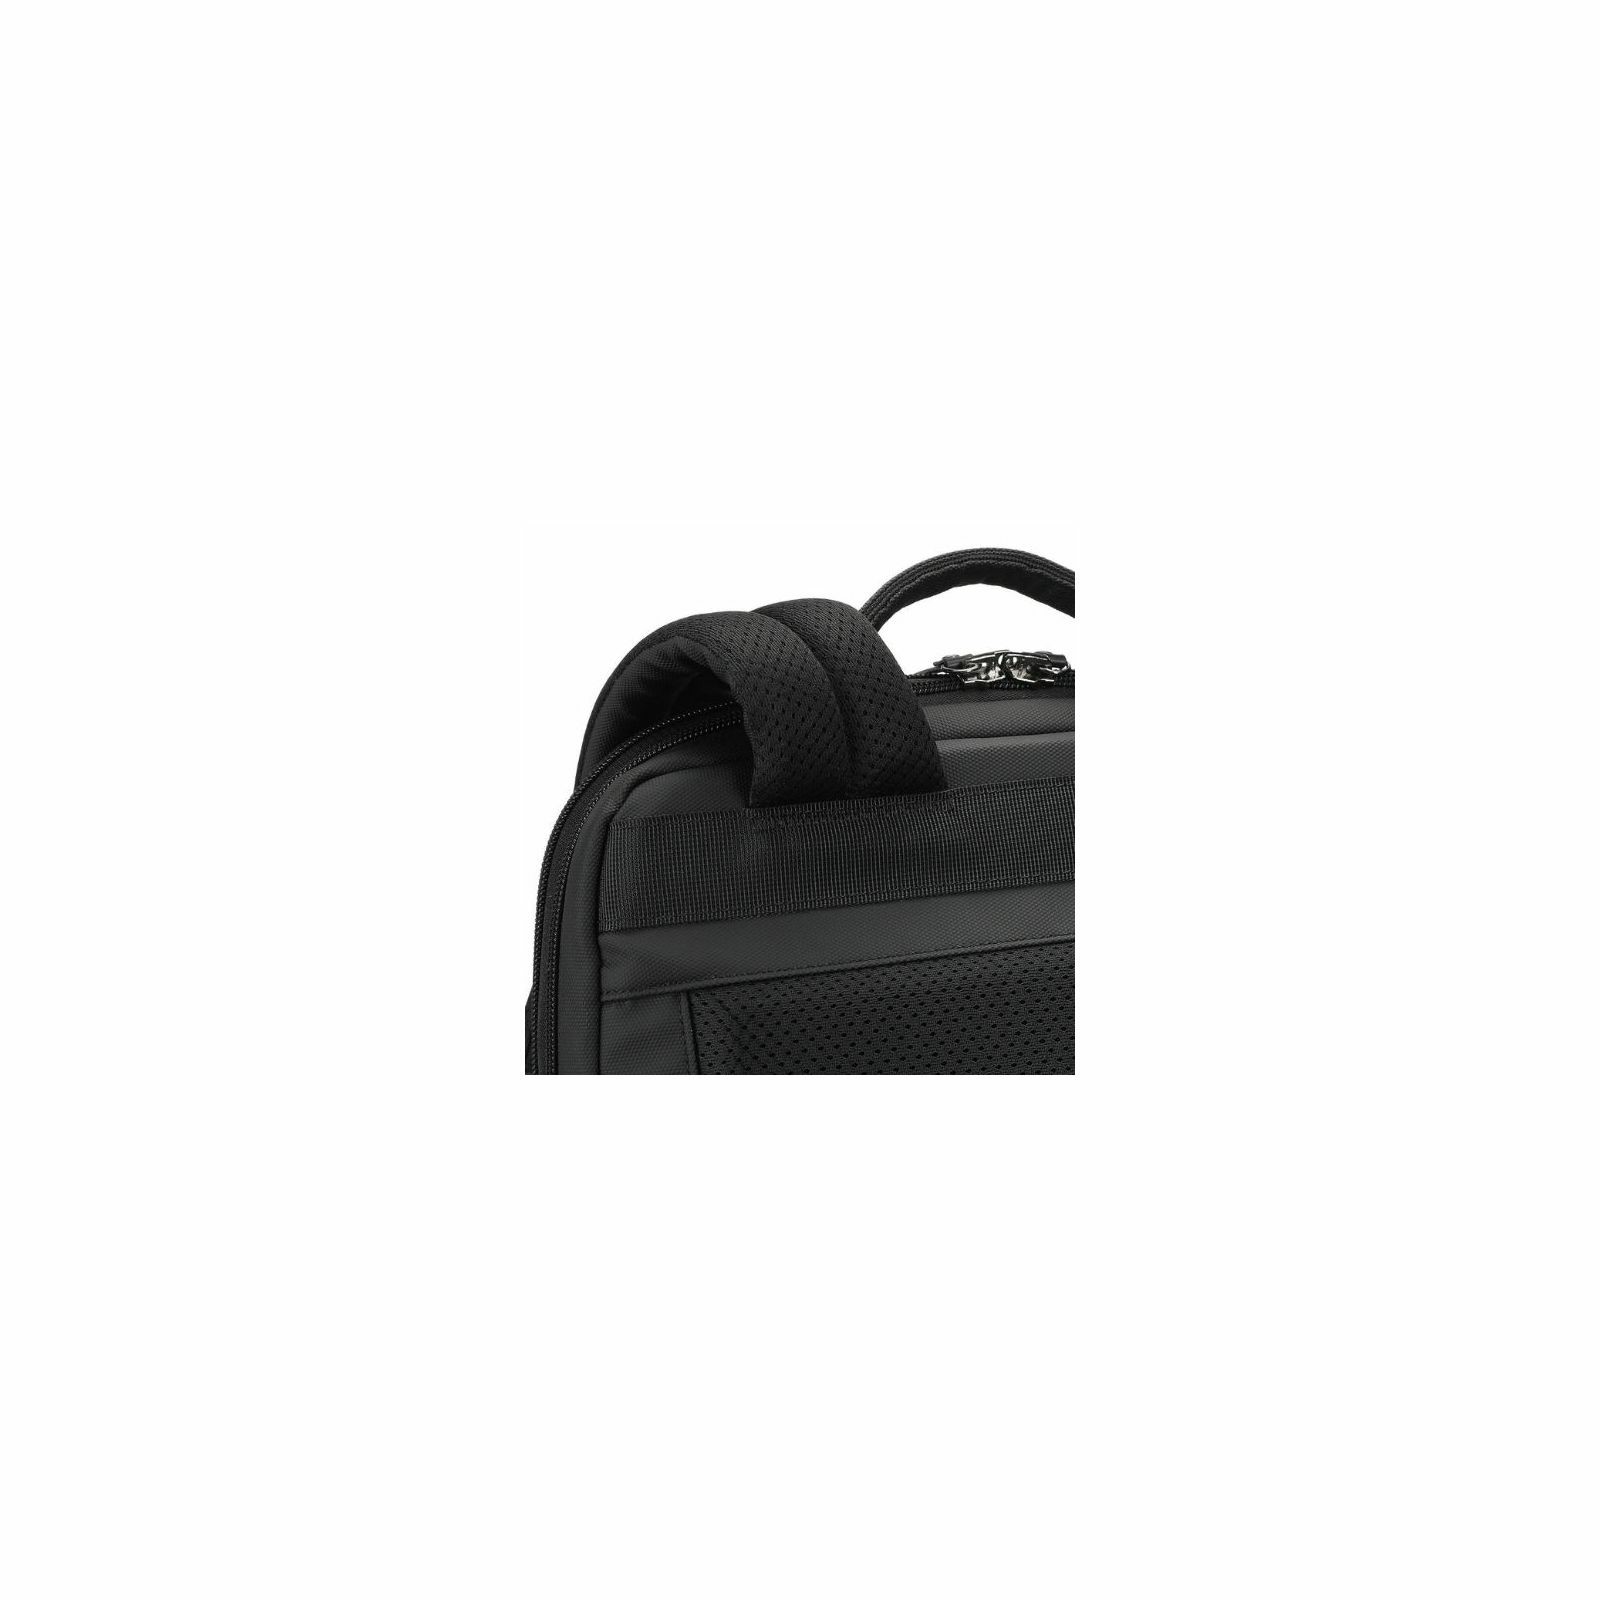 tigernu-laptop-backpack-methone-156-black-55614-6928112310173_48416.jpg